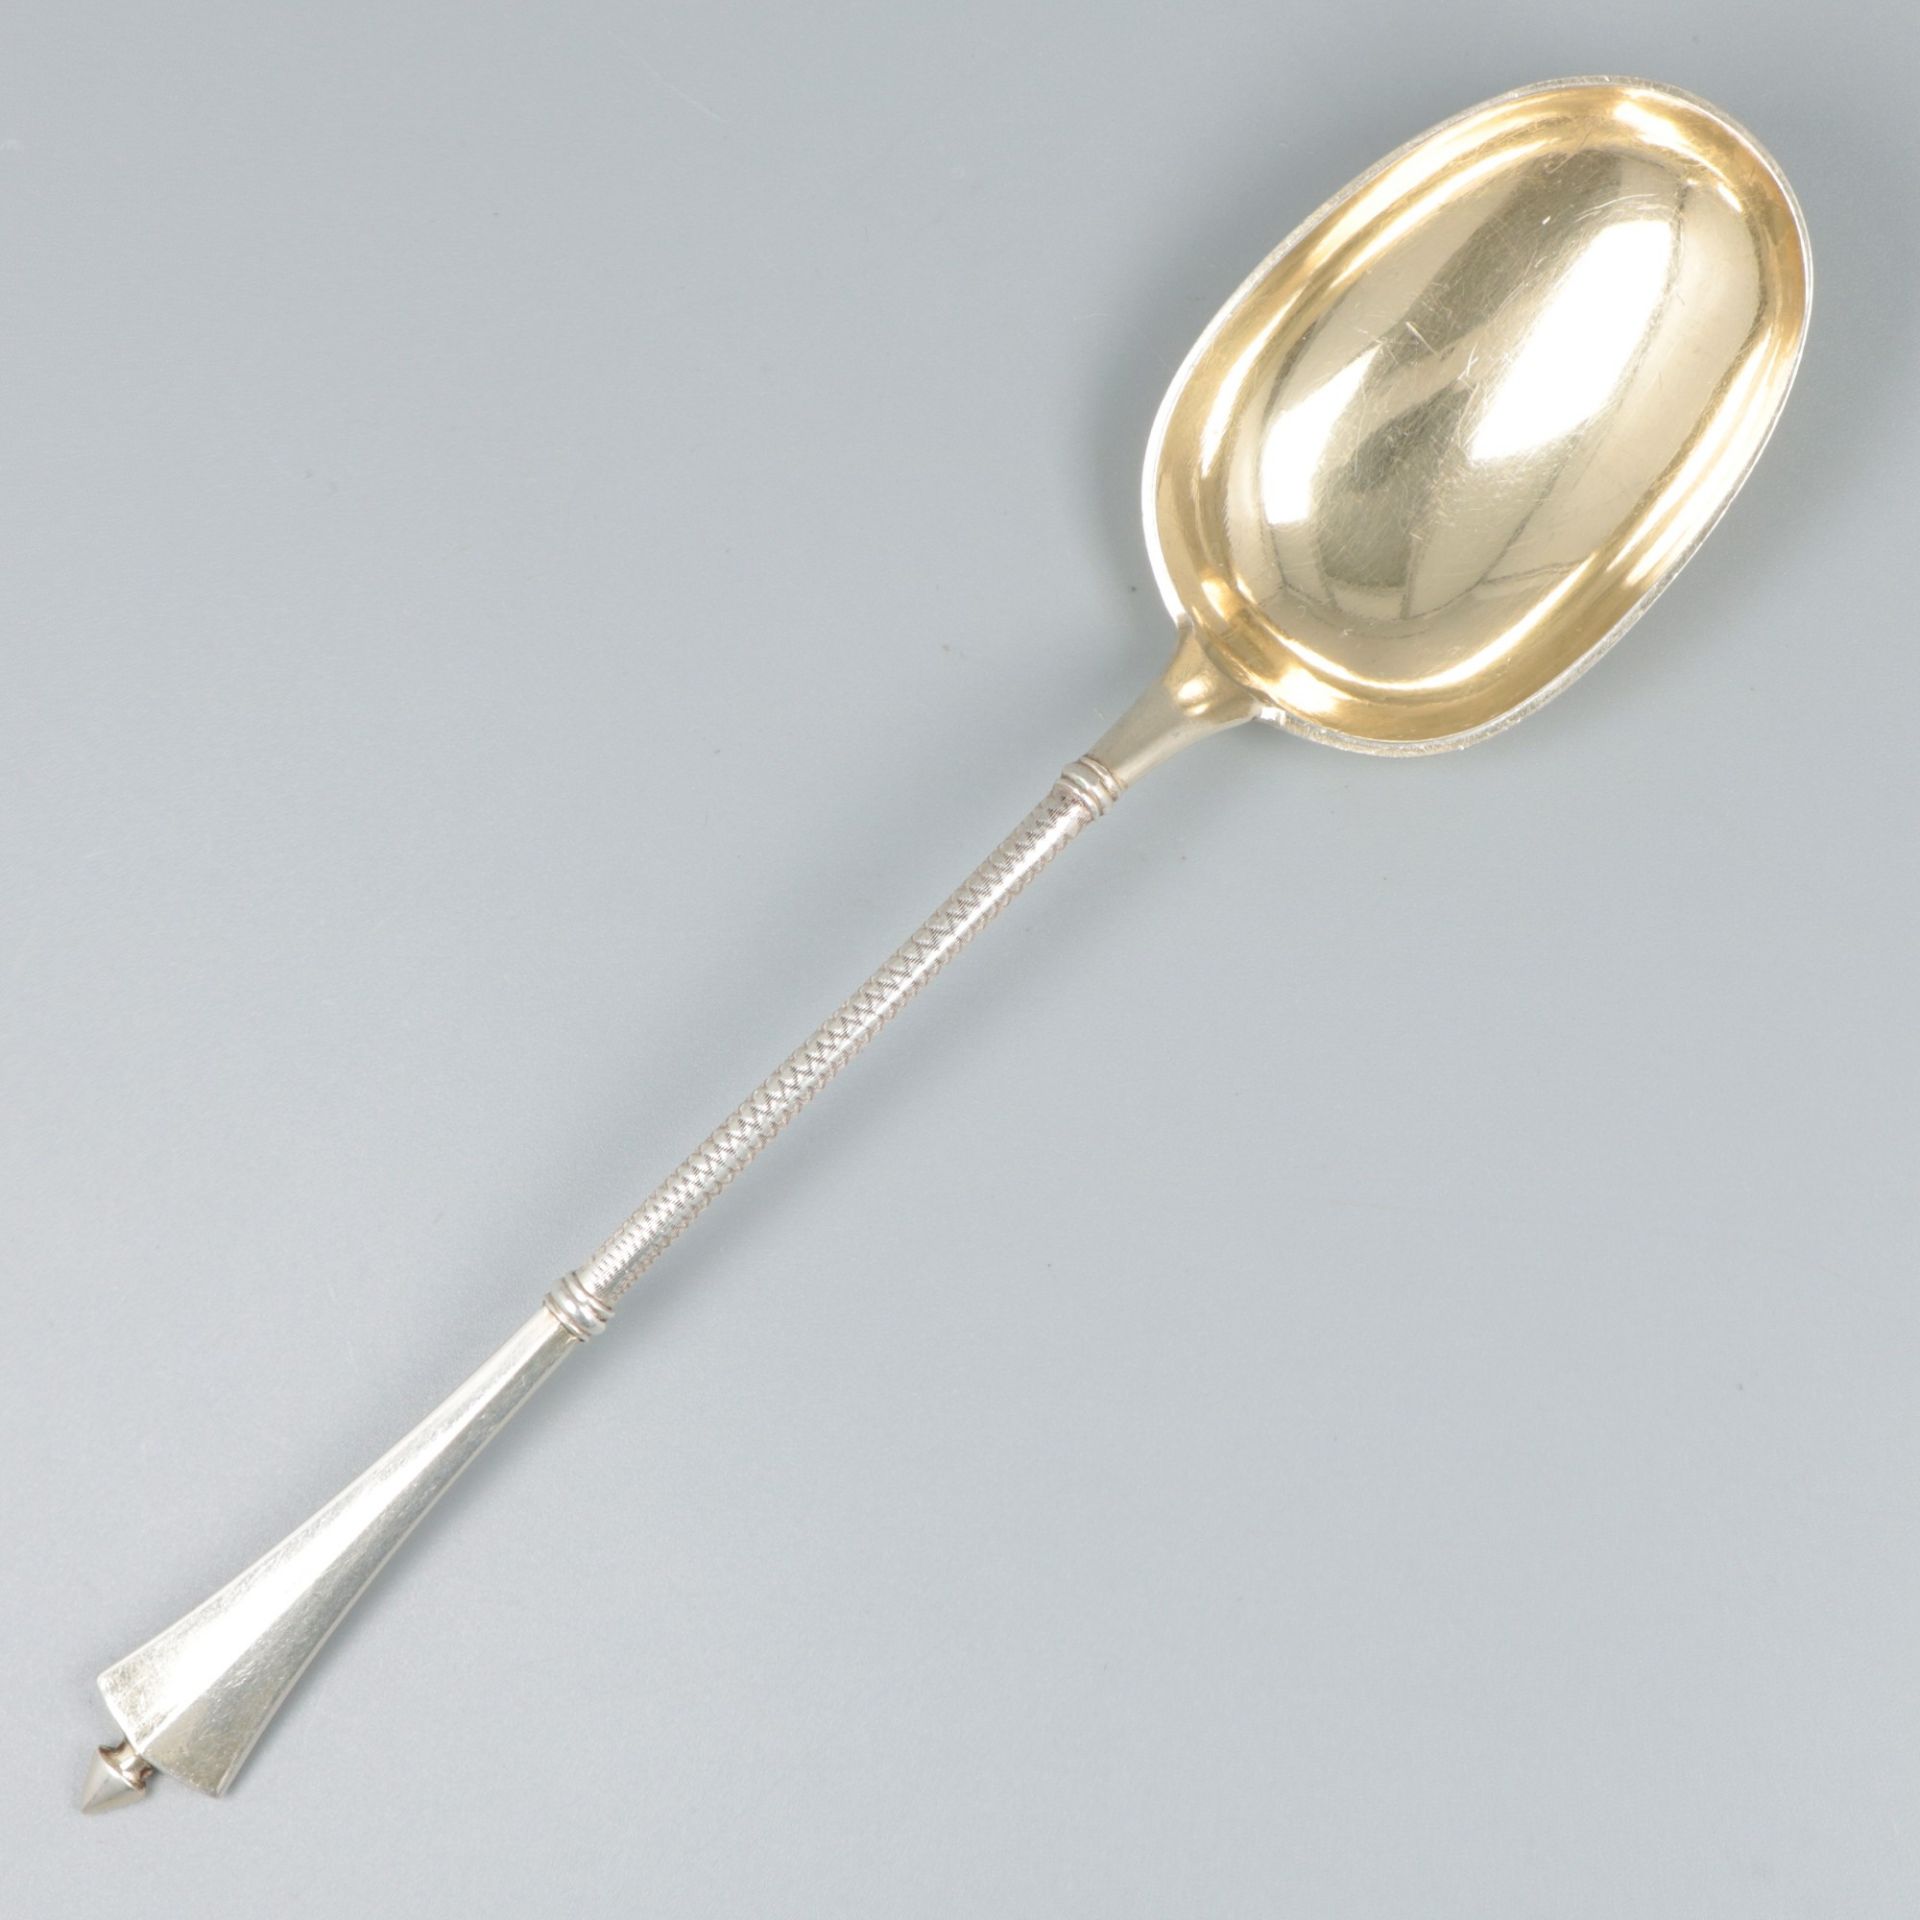 Dinner spoon (Copenhagen, C. Rasmussen 1897) silver.